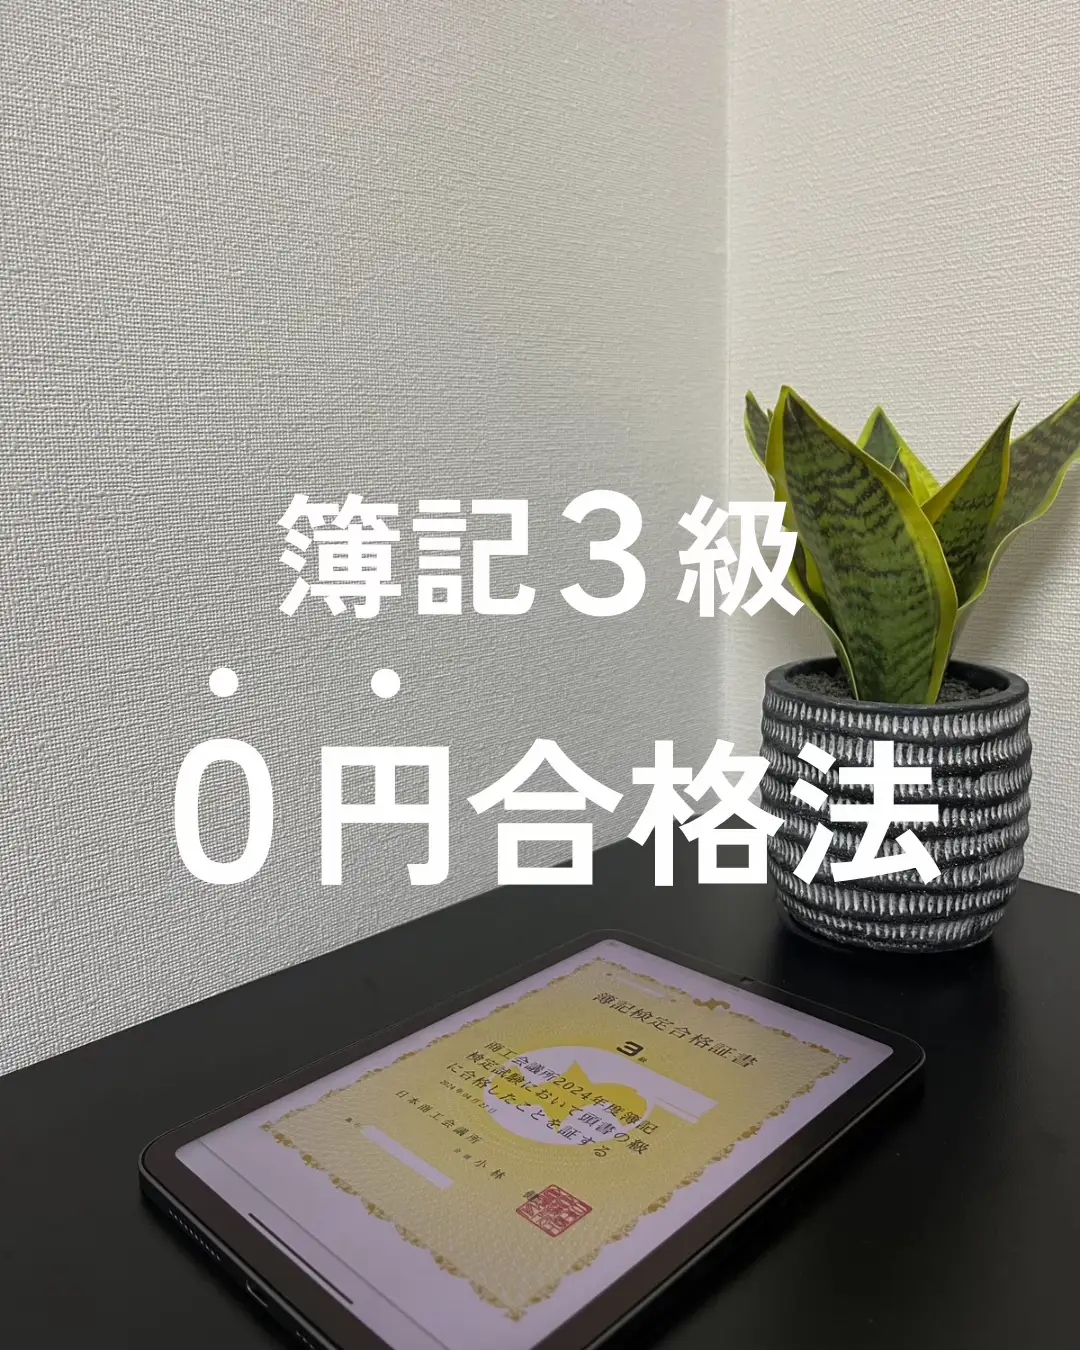 日商簿記検定3級 勉強法 - Lemon8検索